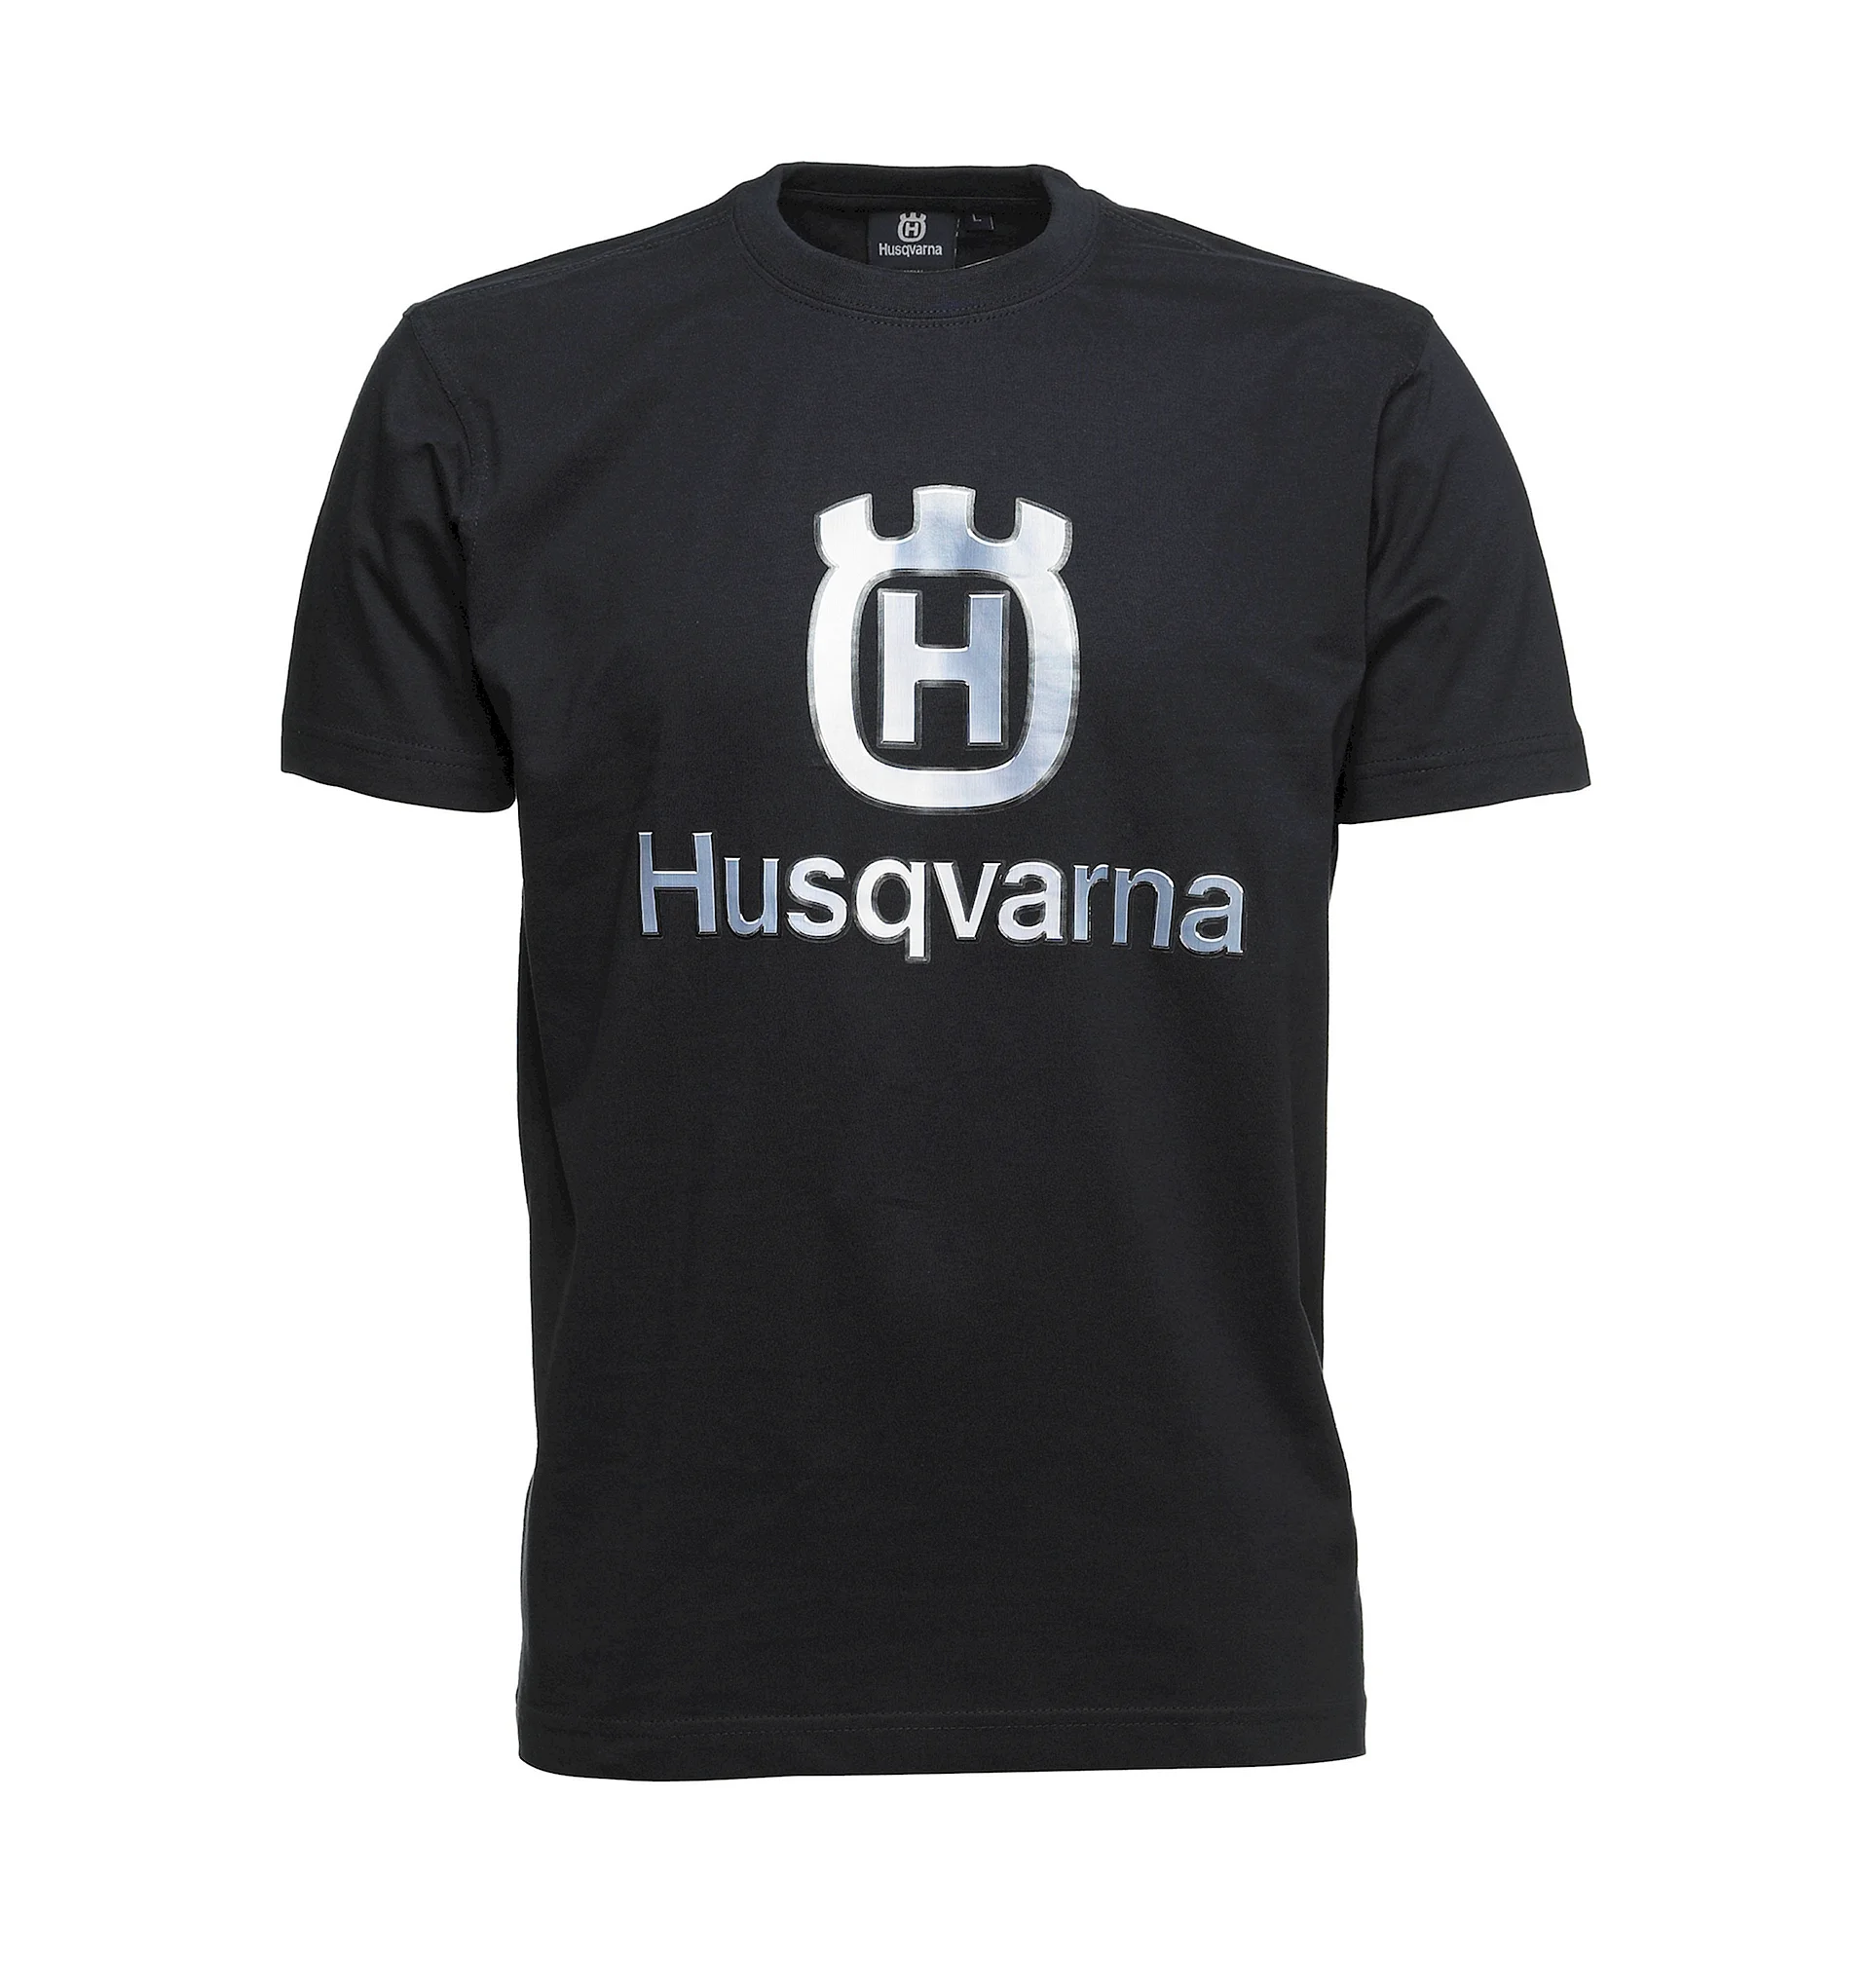 Husqvarna Shirt Wallpaper